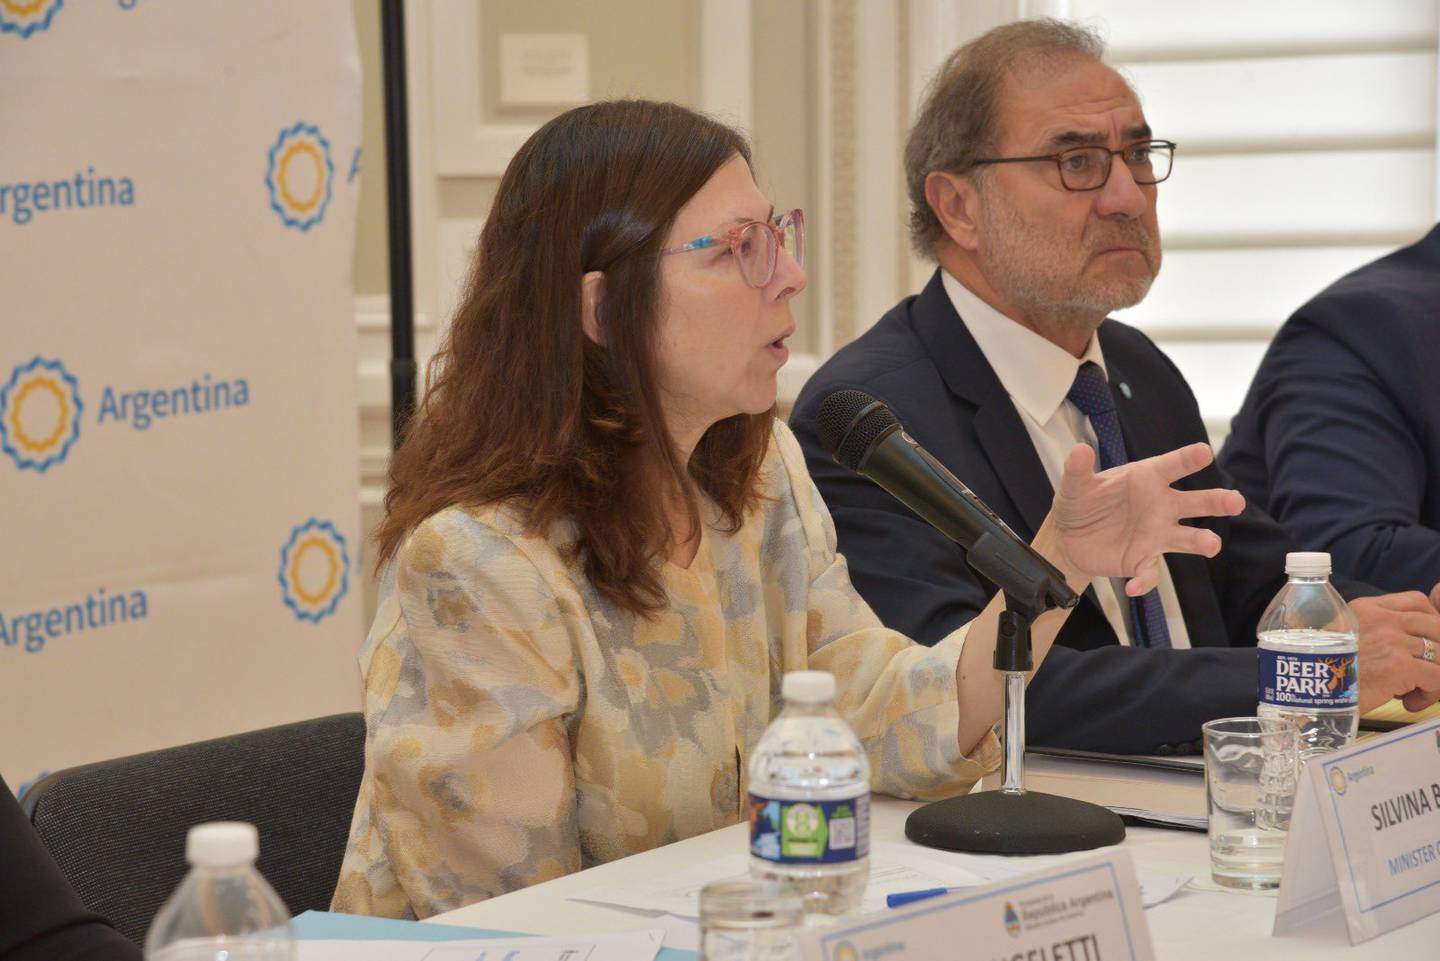 La ministra de Economía y el embajador de Argentina en los Estados Unidos participaron del encuentro esta mañana.